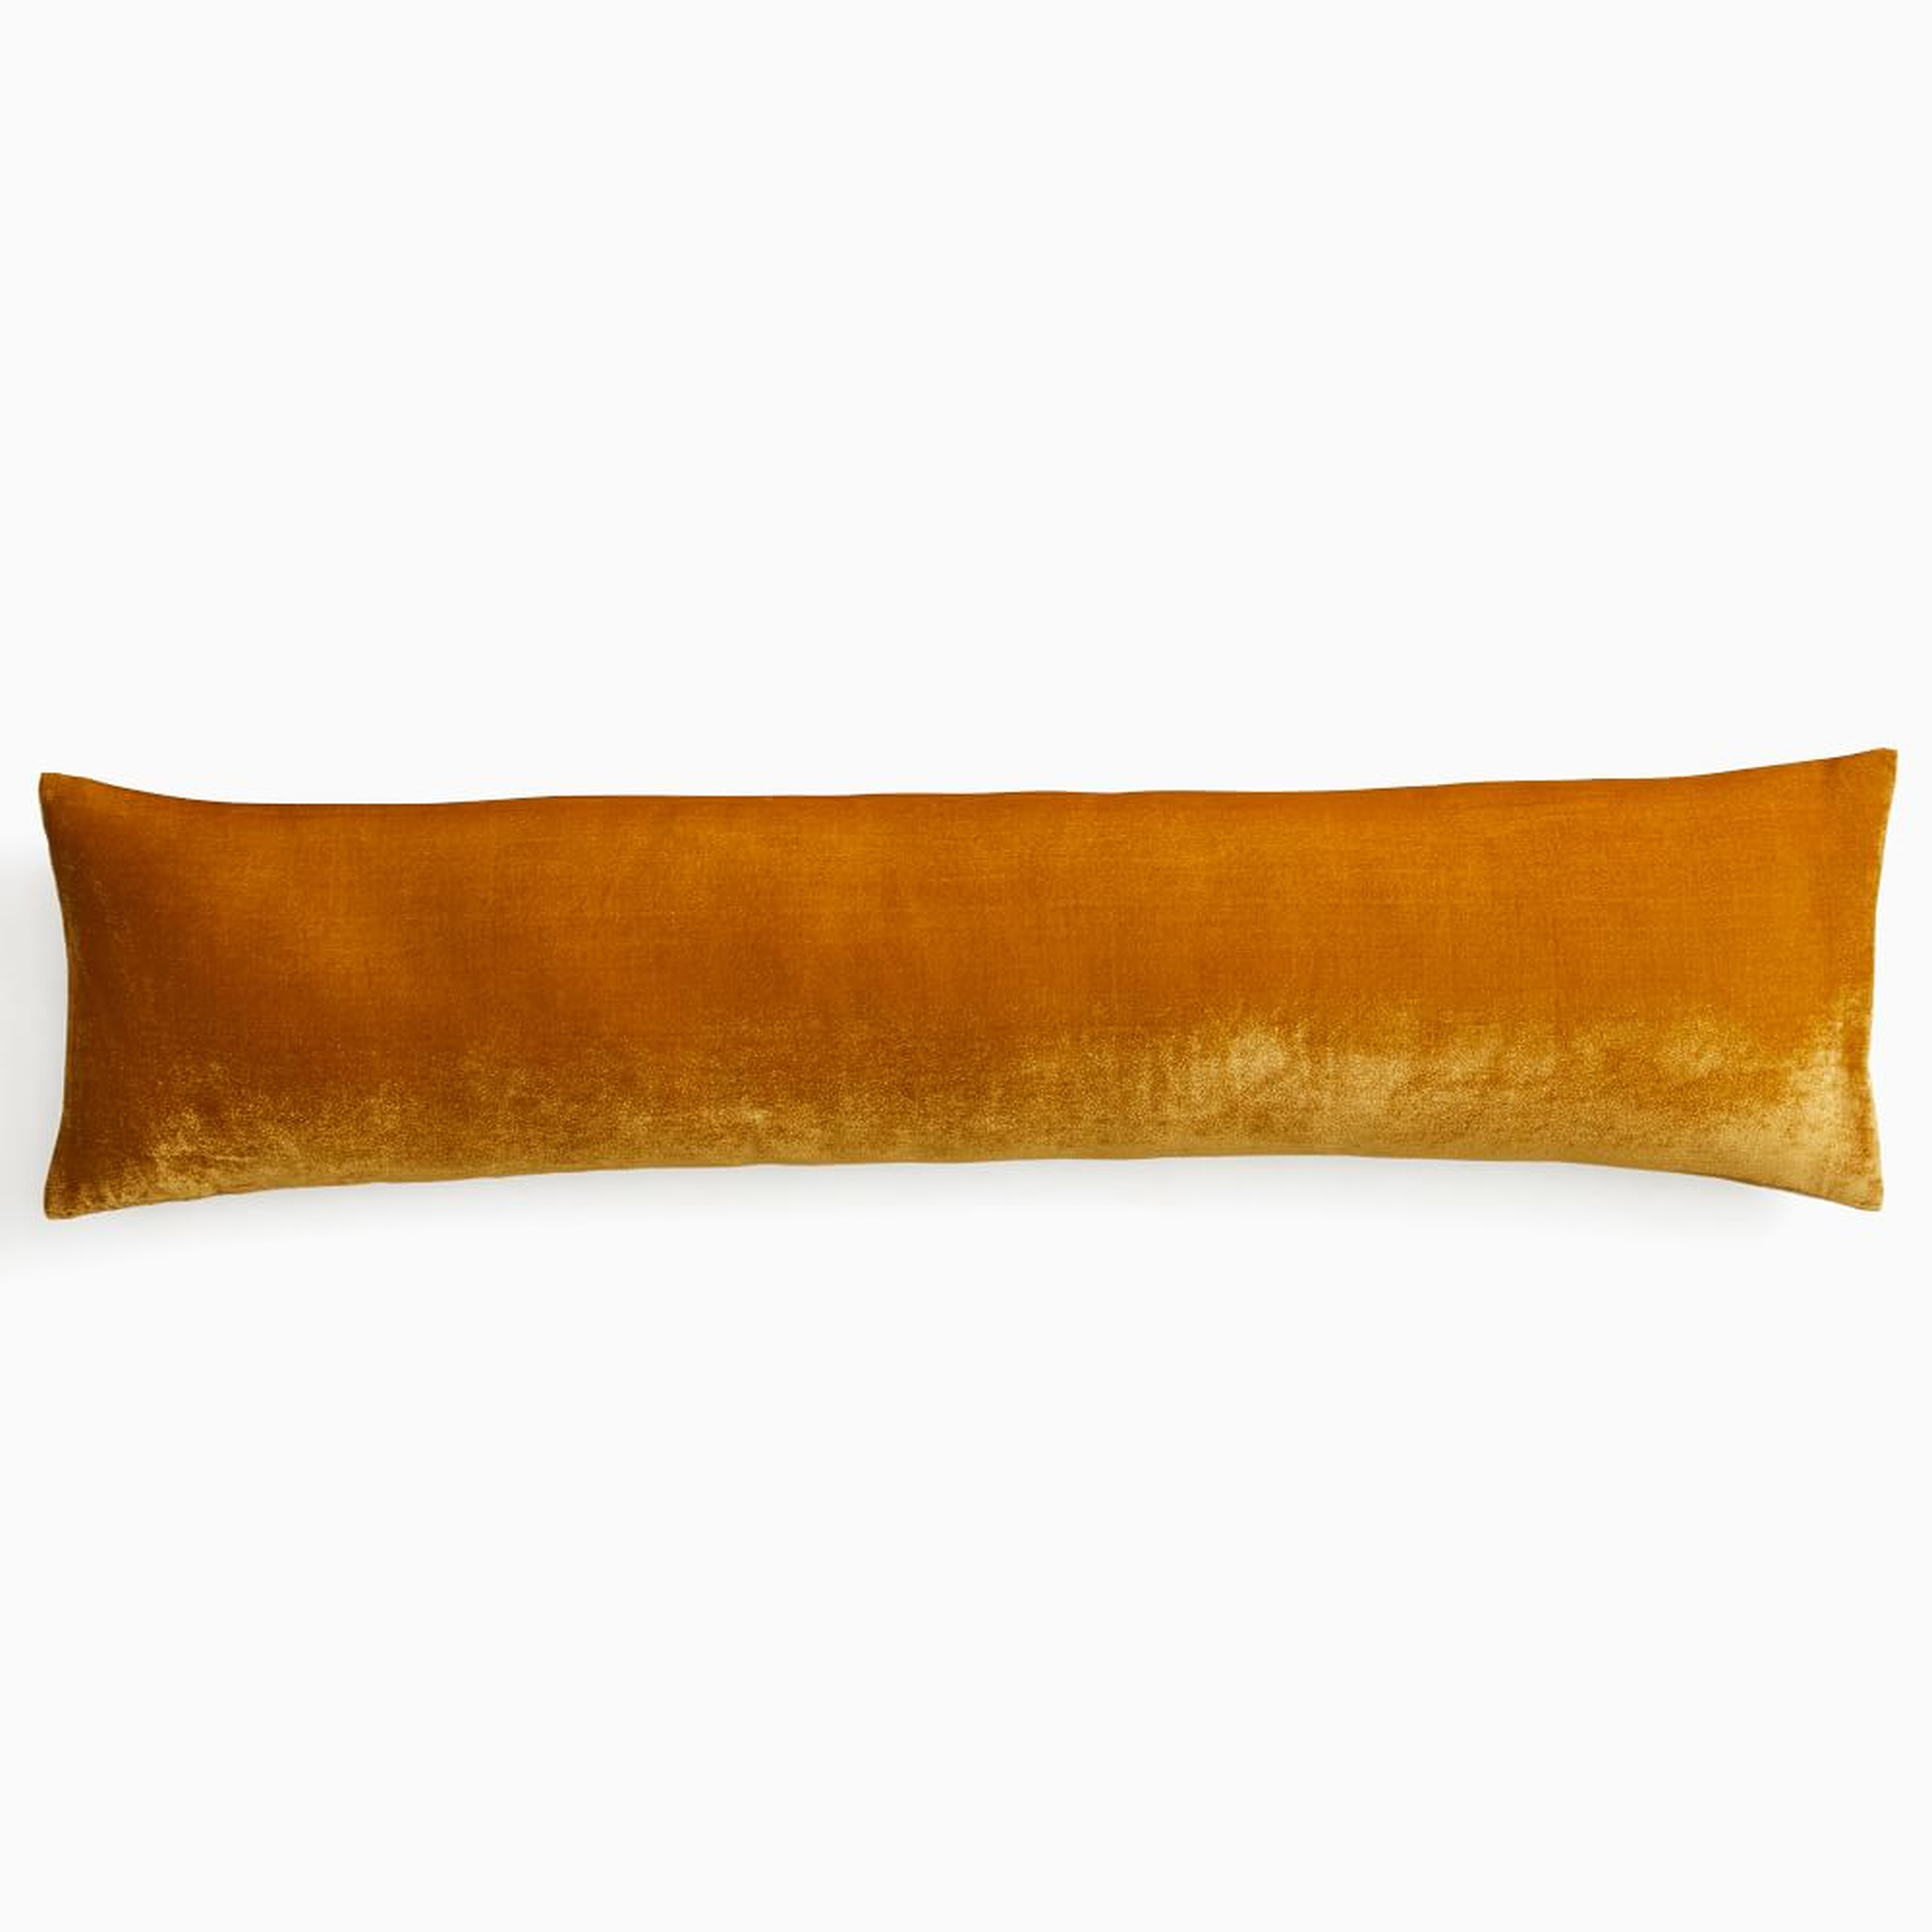 Lush Velvet Pillow Cover, 12"x46", Golden Oak - West Elm